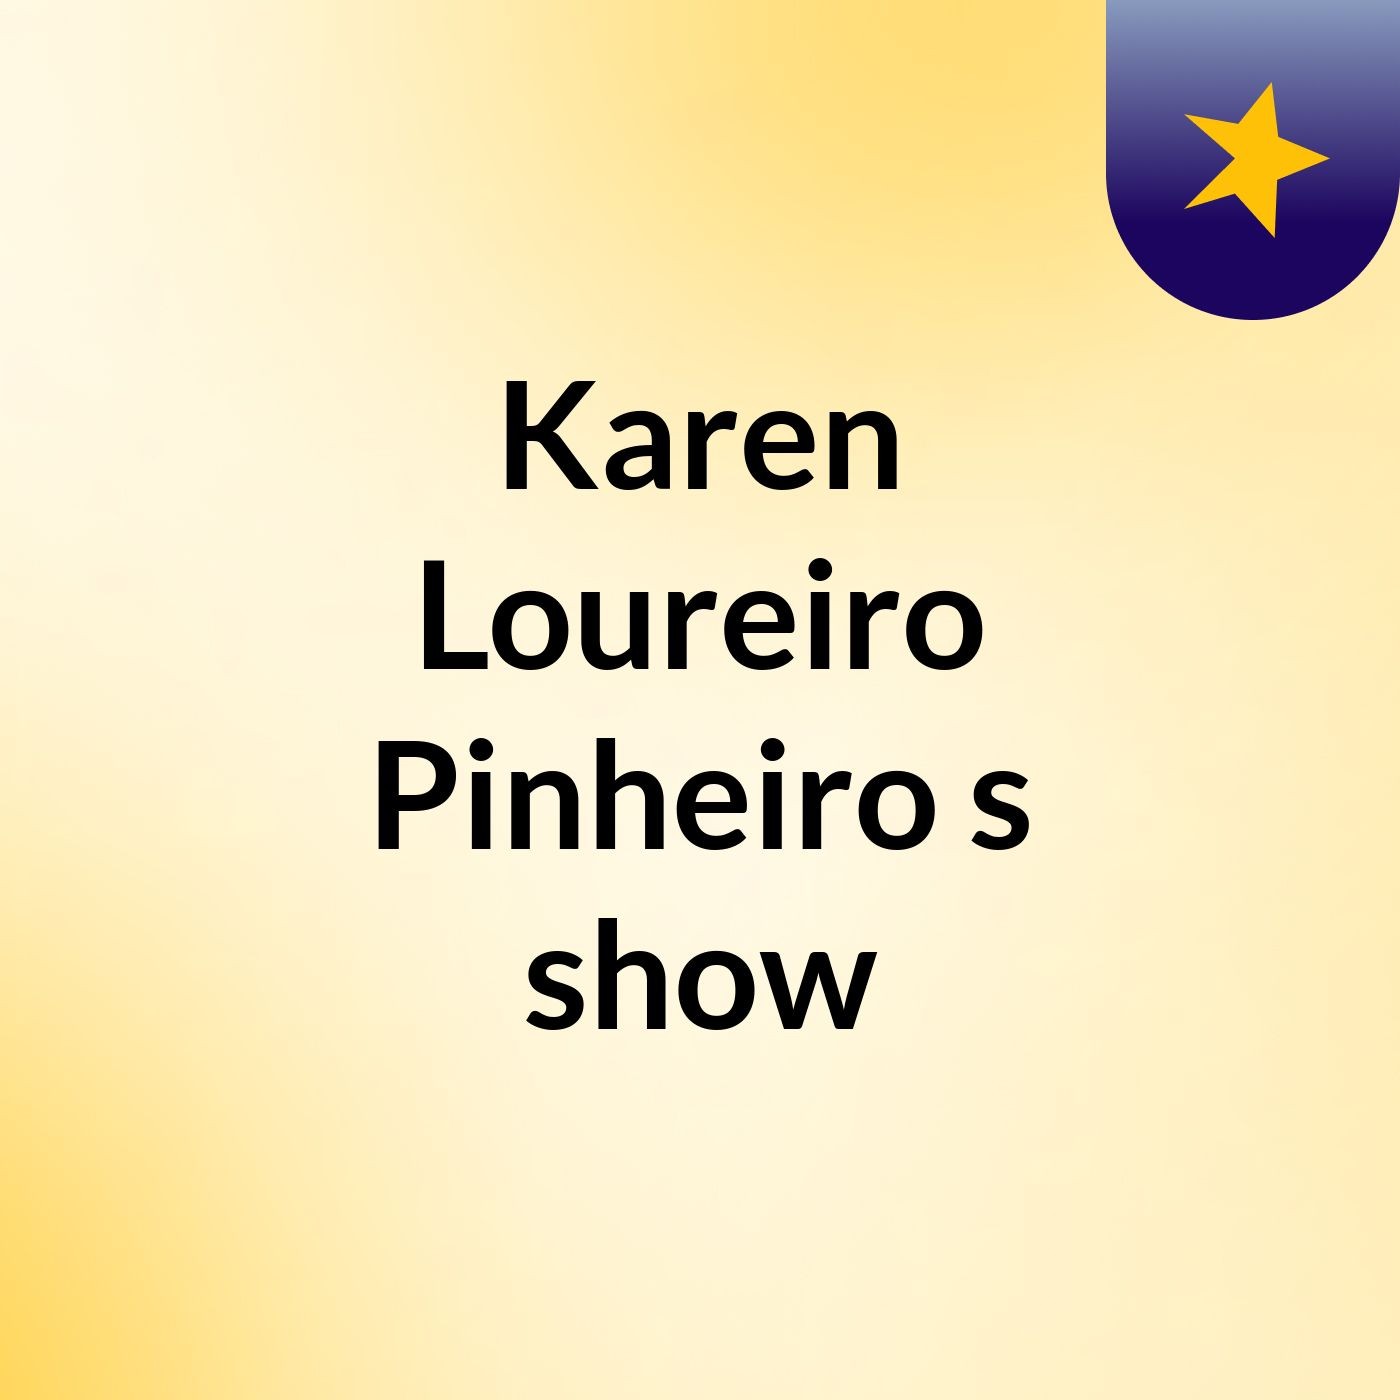 Karen Loureiro Pinheiro's show